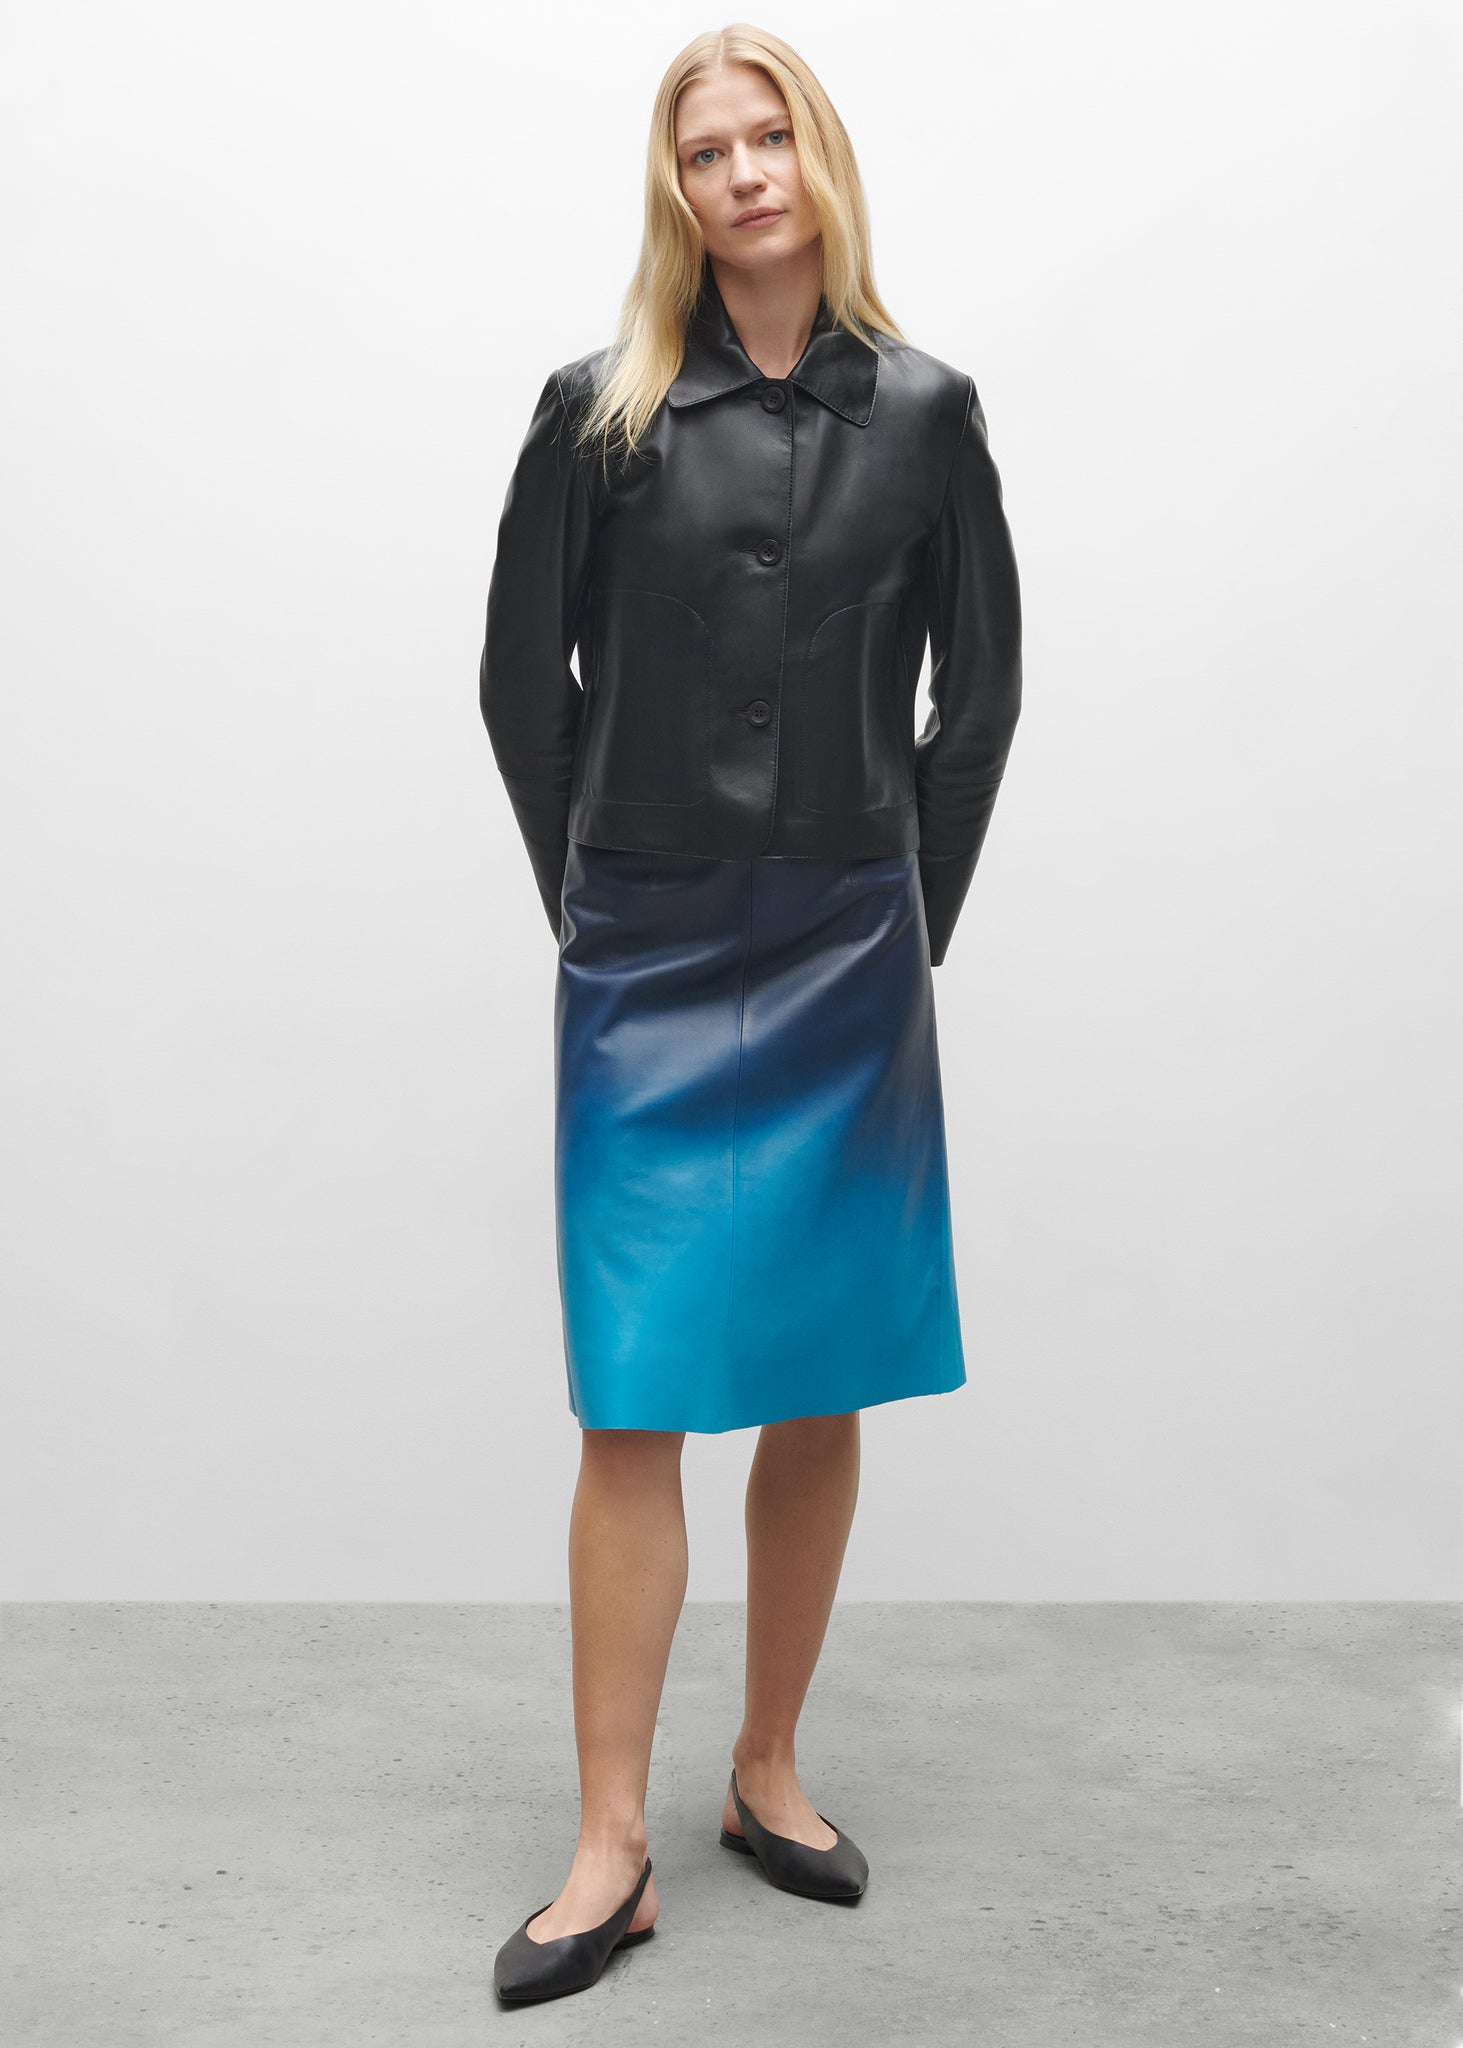 ORTIGIA | Dip Dye Leather Skirt